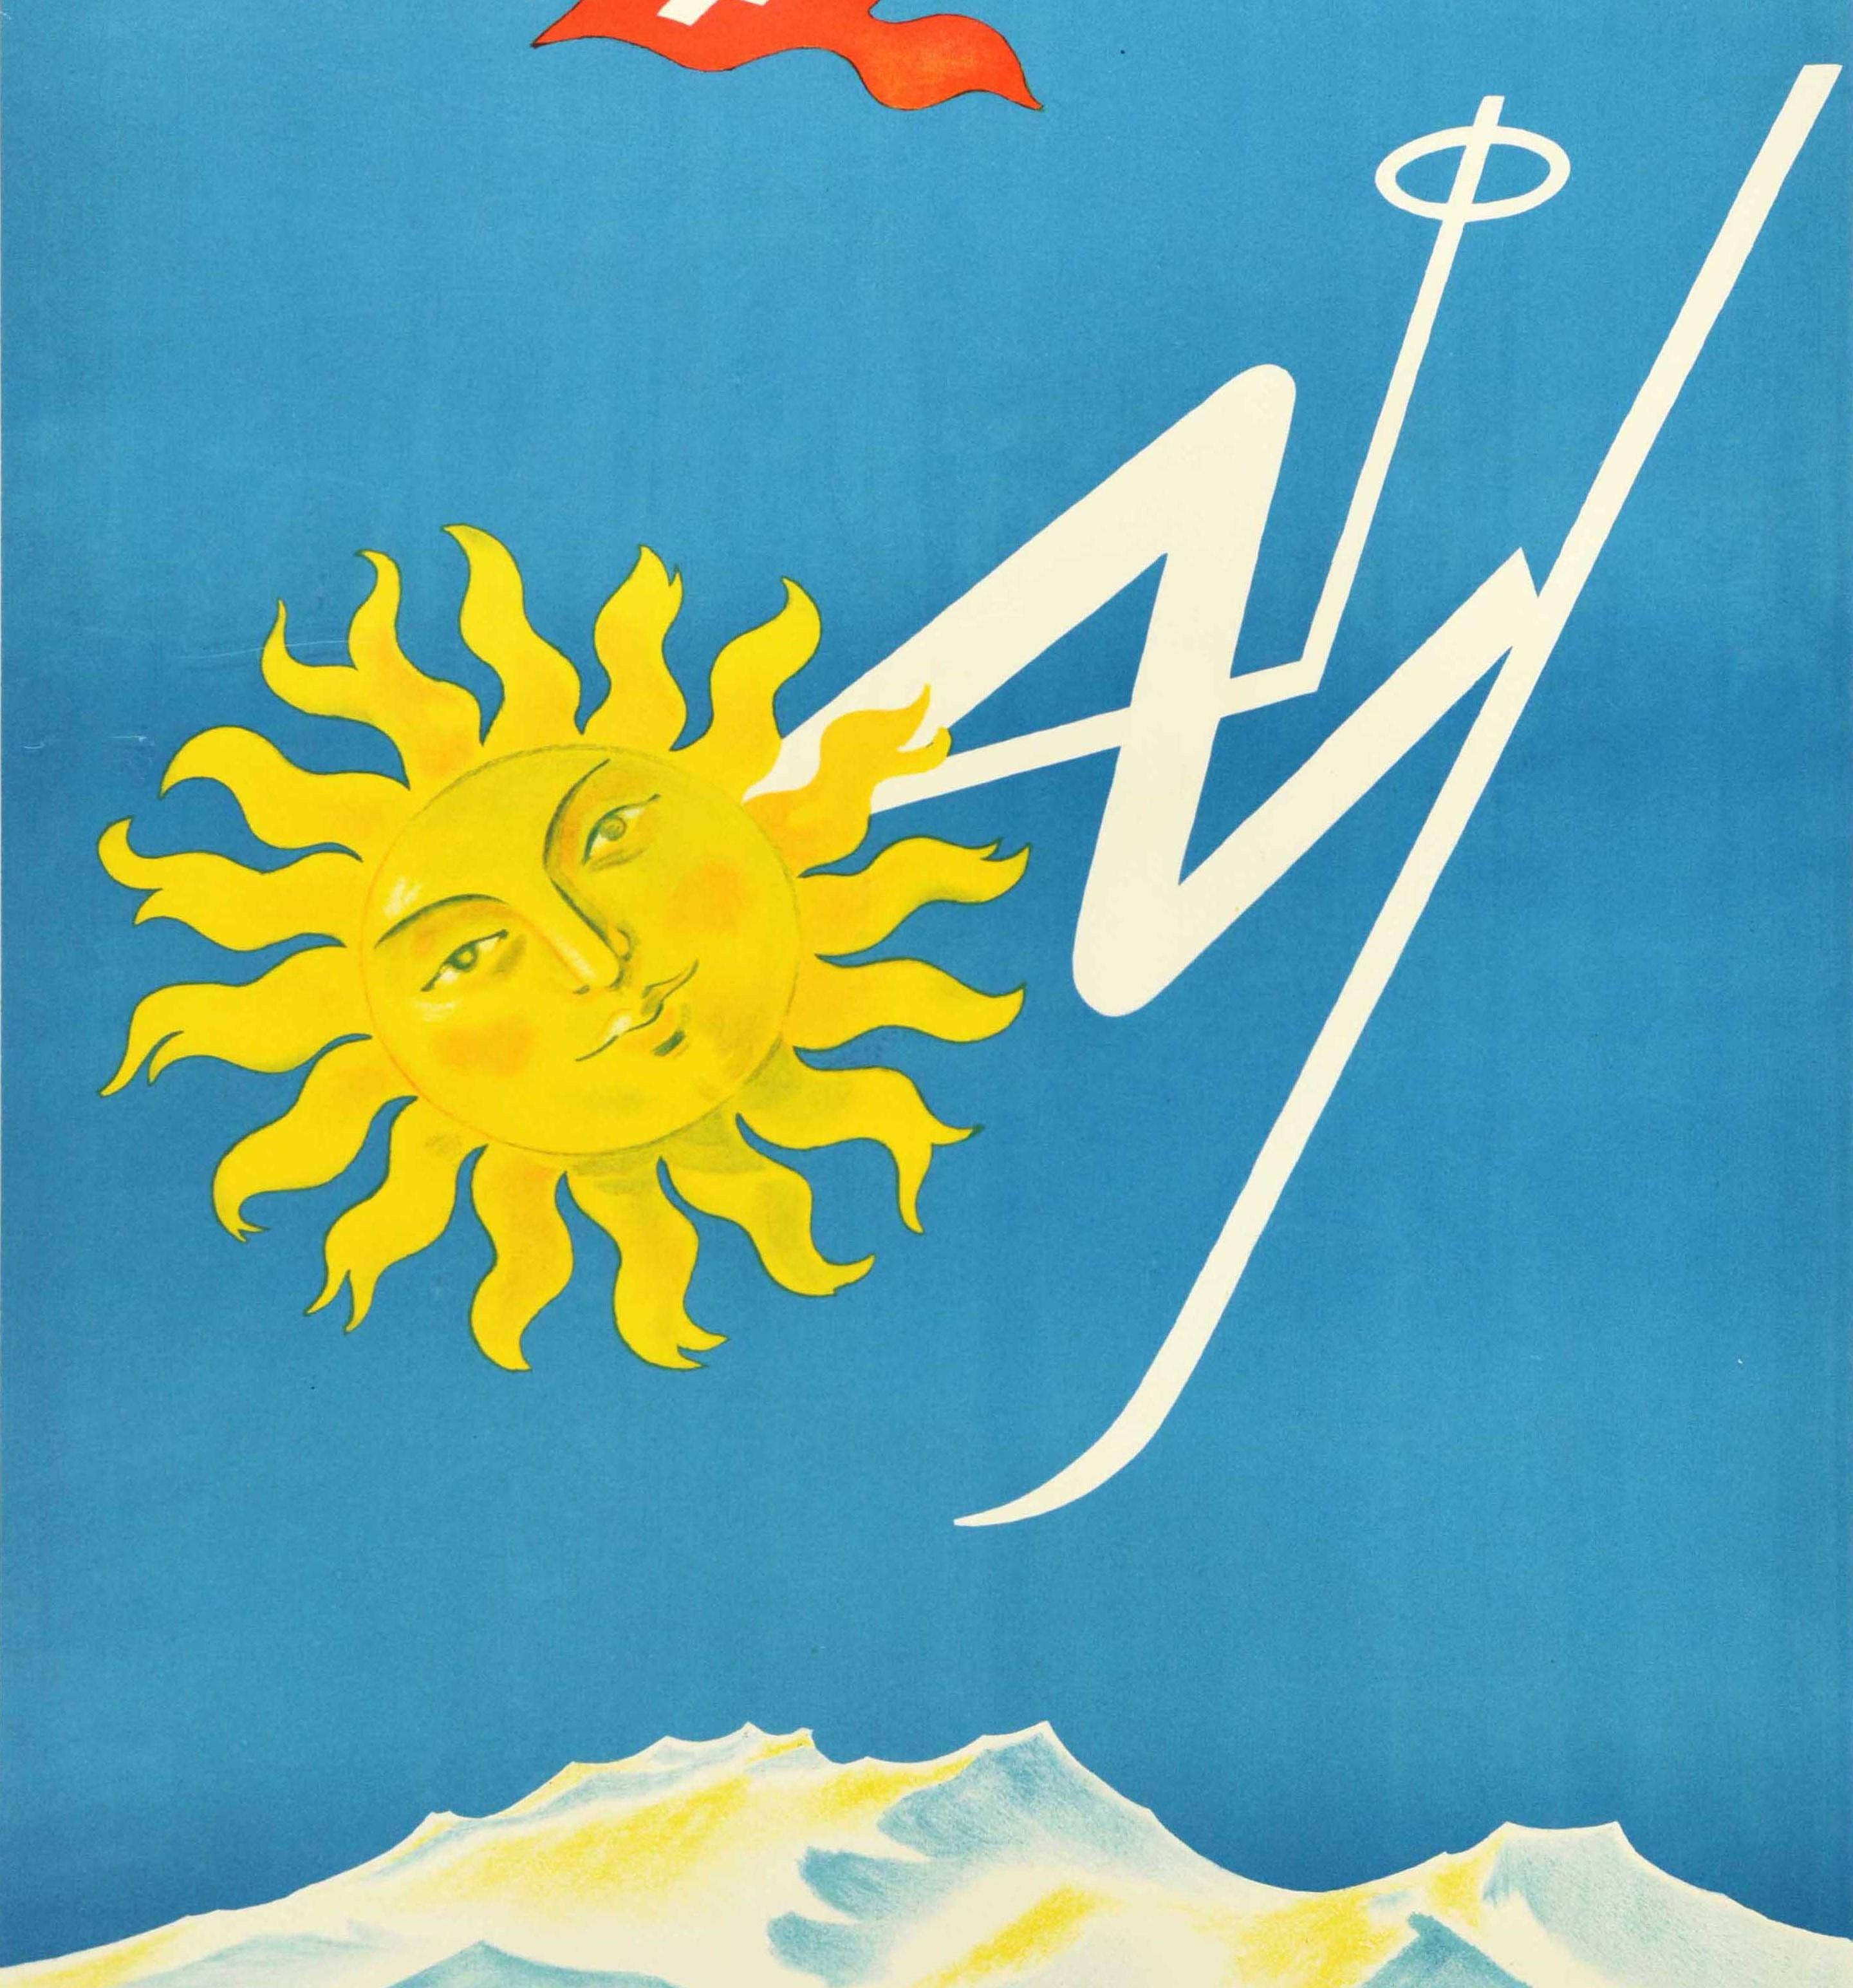 Original-Wintersport-Reiseplakat für den Skiort St. Moritz mit einem großartigen Entwurf des Schweizer Künstlers Franco Barberis (1905-1992), der das Logo der lächelnden Sonne von St. Moritz in Form eines Skifahrers auf Skiern zeigt, der den